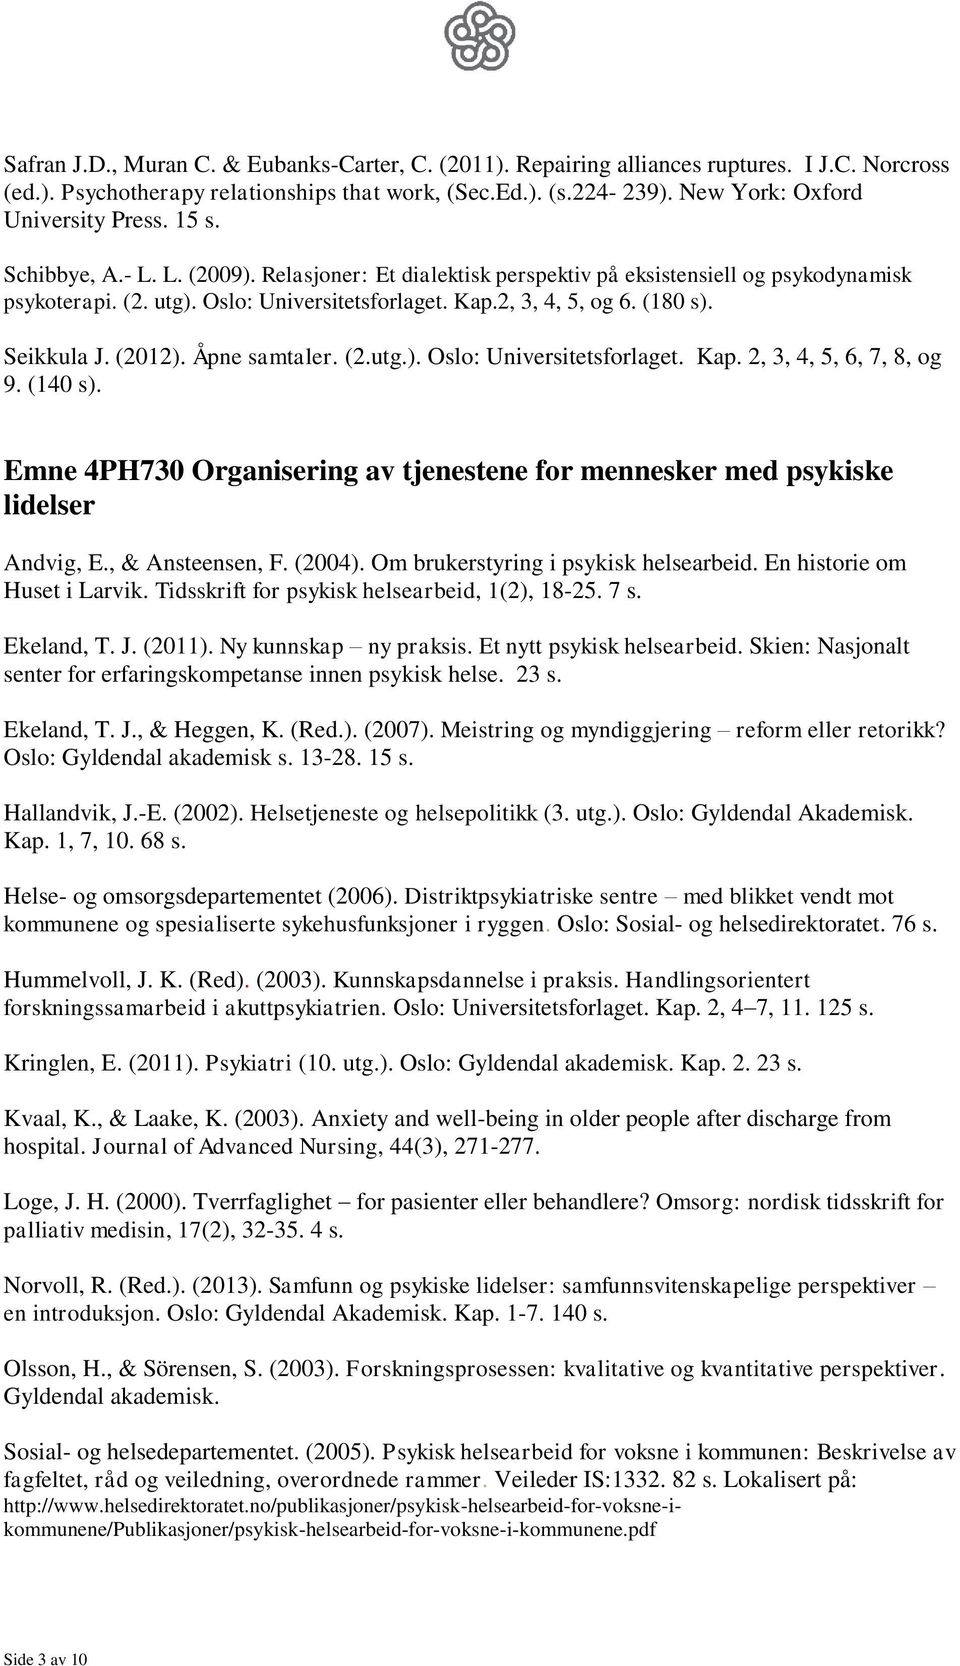 2, 3, 4, 5, og 6. (180 s). Seikkula J. (2012). Åpne samtaler. (2.utg.). Oslo: Universitetsforlaget. Kap. 2, 3, 4, 5, 6, 7, 8, og 9. (140 s).